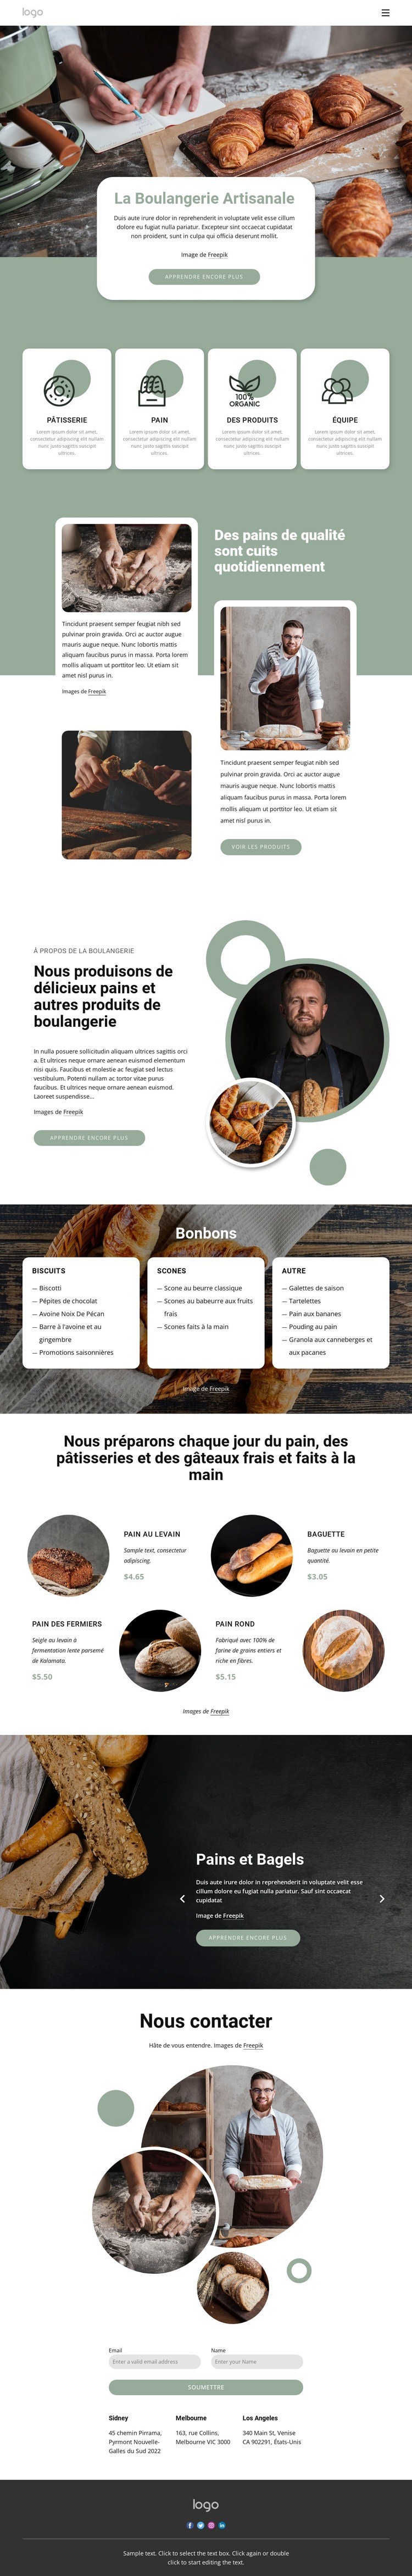 La boulangerie artisanale Modèles de constructeur de sites Web